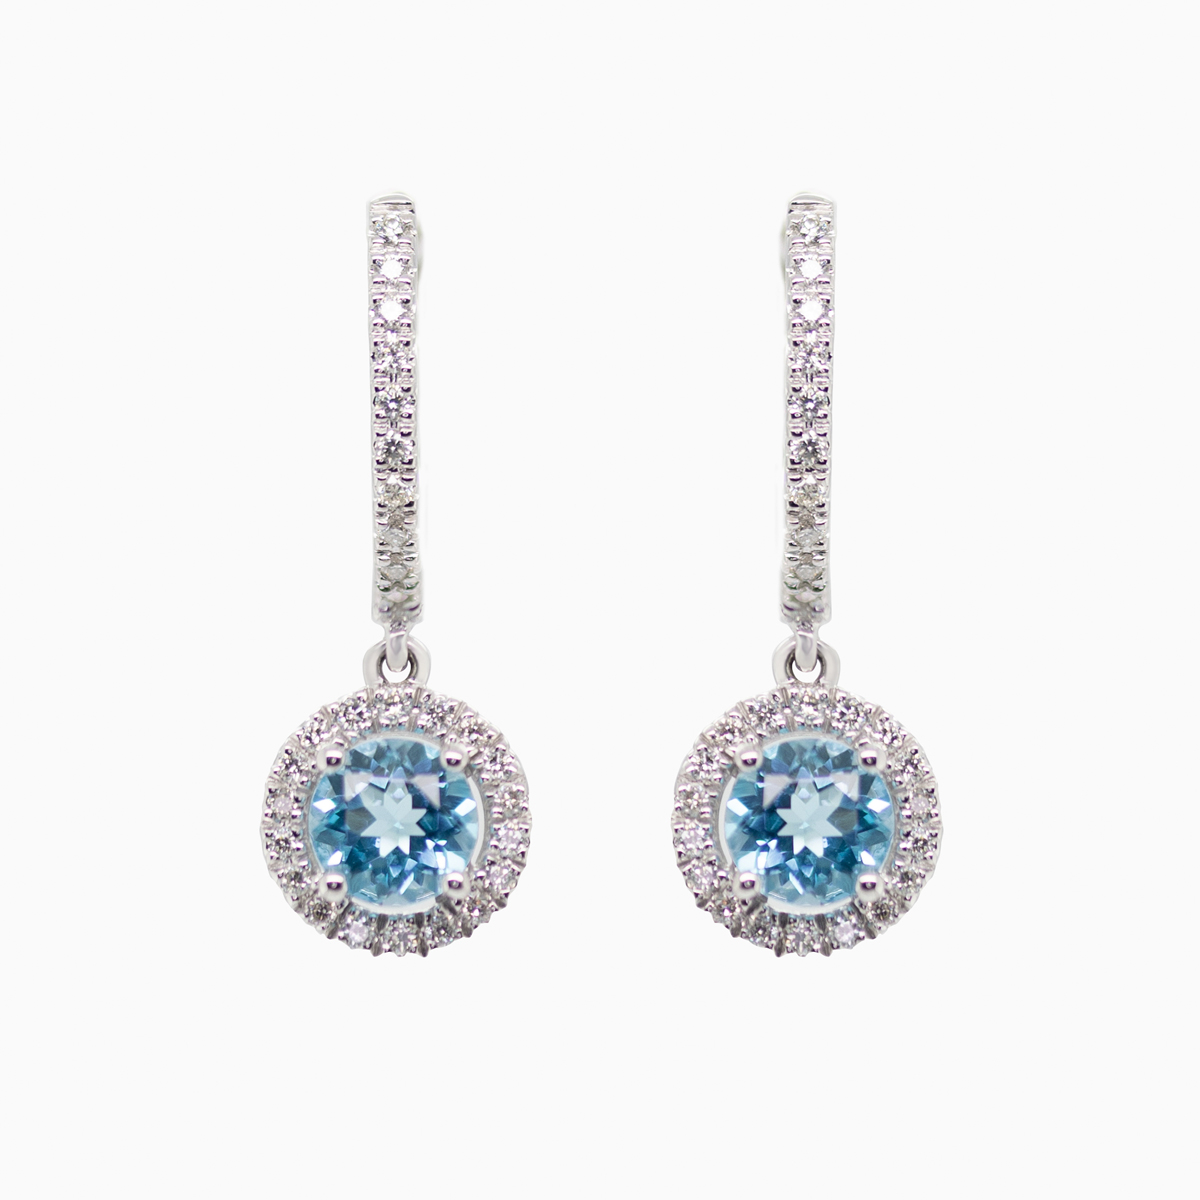 Natural London Blue Topaz and Diamond Dangle Earrings, 14k White Gold